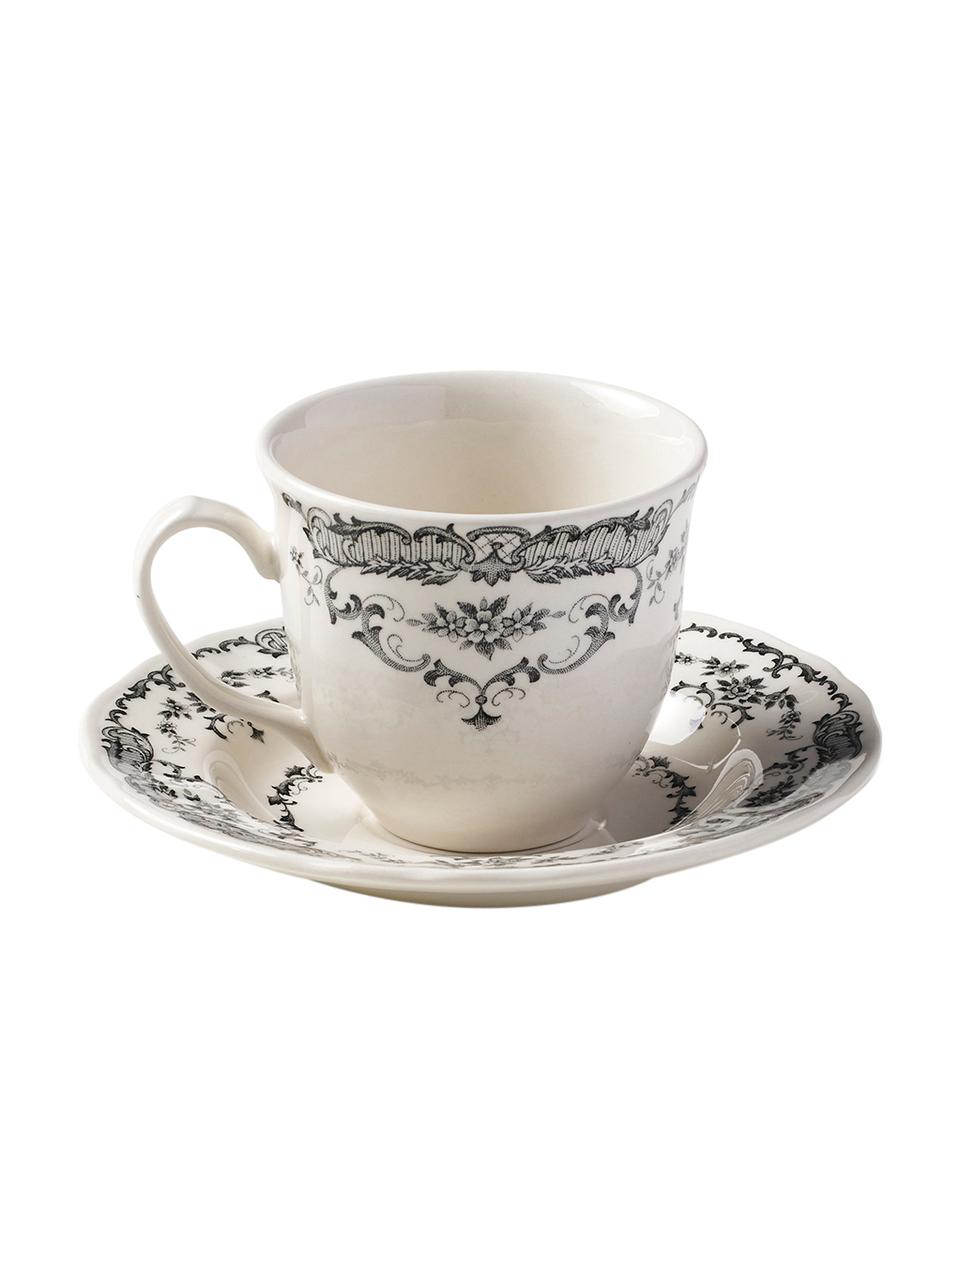 Teetassen mit Untertassen Rose mit Blumenmuster in Weiß/Schwarz, 2 Stück , Keramik, Weiß, Schwarz, Ø 9 x H 8 cm, 250 ml